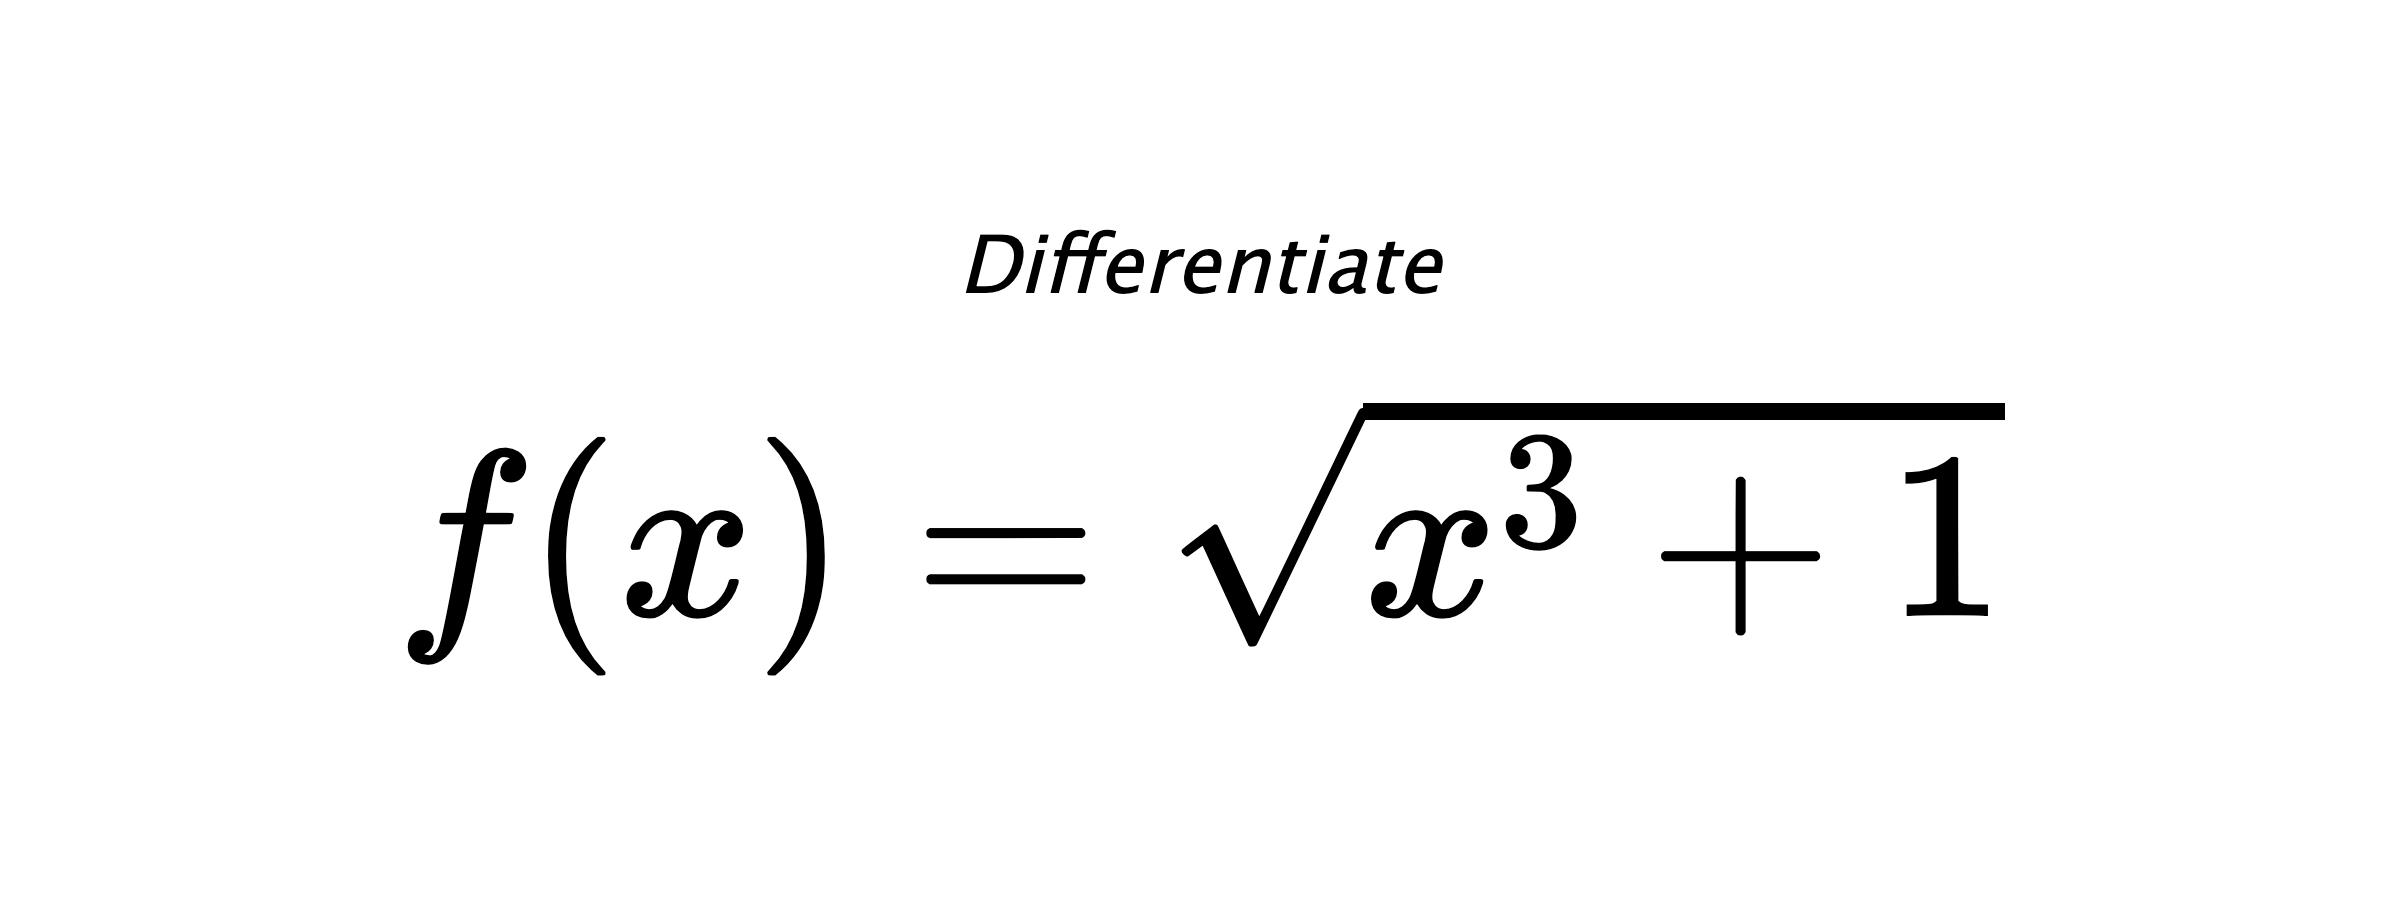 Differentiate $ f(x) = \sqrt{x^{3} + 1} $